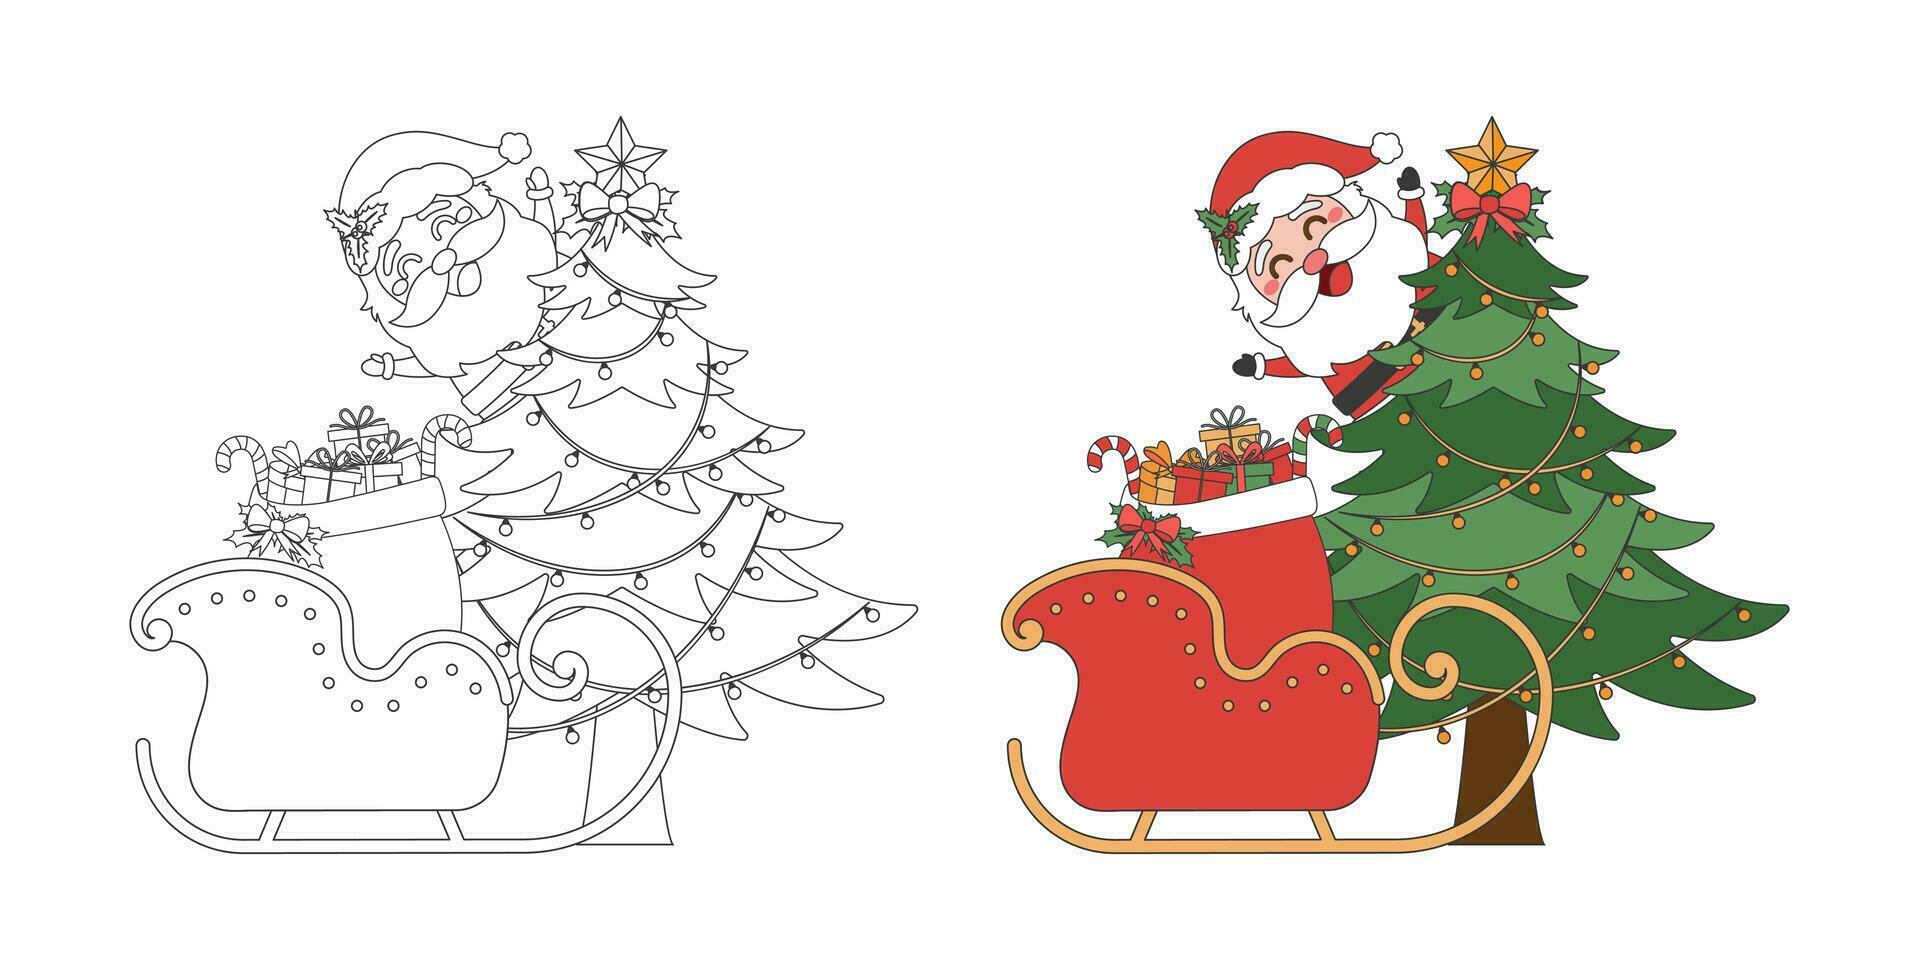 Santa Klaus, Schlitten mit Weihnachten Geschenk Tasche und Weihnachten Baum, Weihnachten Thema Linie Kunst Gekritzel Karikatur Illustration, fröhlich Weihnachten. vektor